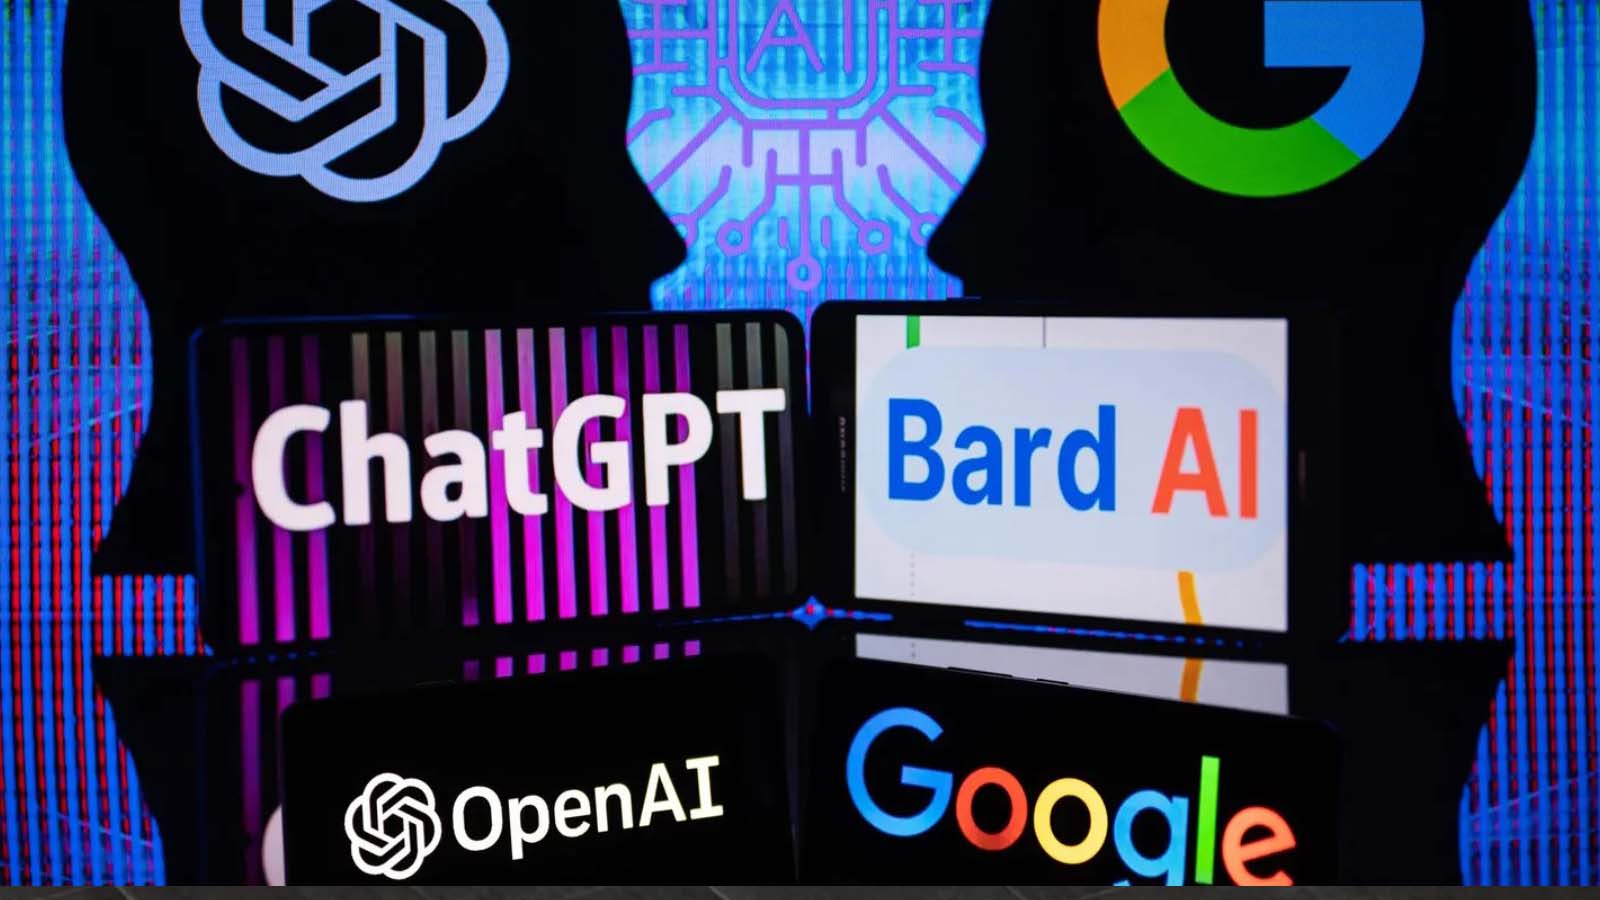 Una panoramica della competizione in corso tra Google e OpenAI e come Bard si evolve in questo contesto